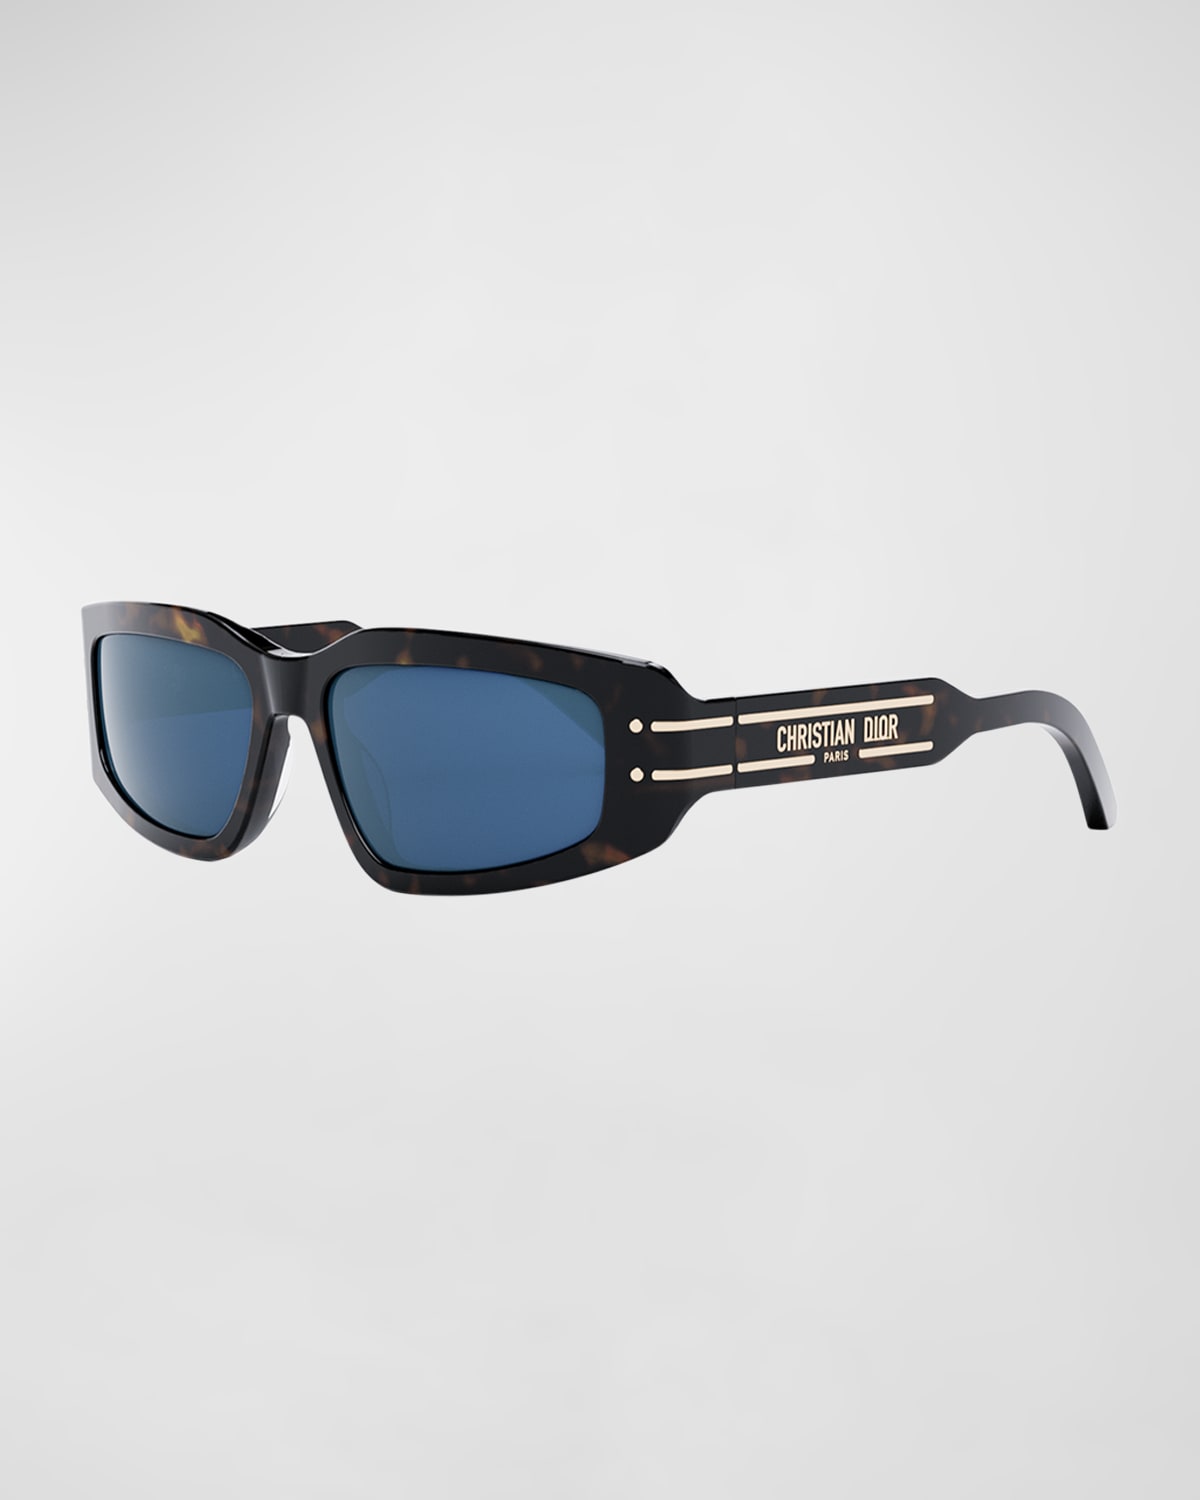 DiorSignature S9U Sunglasses